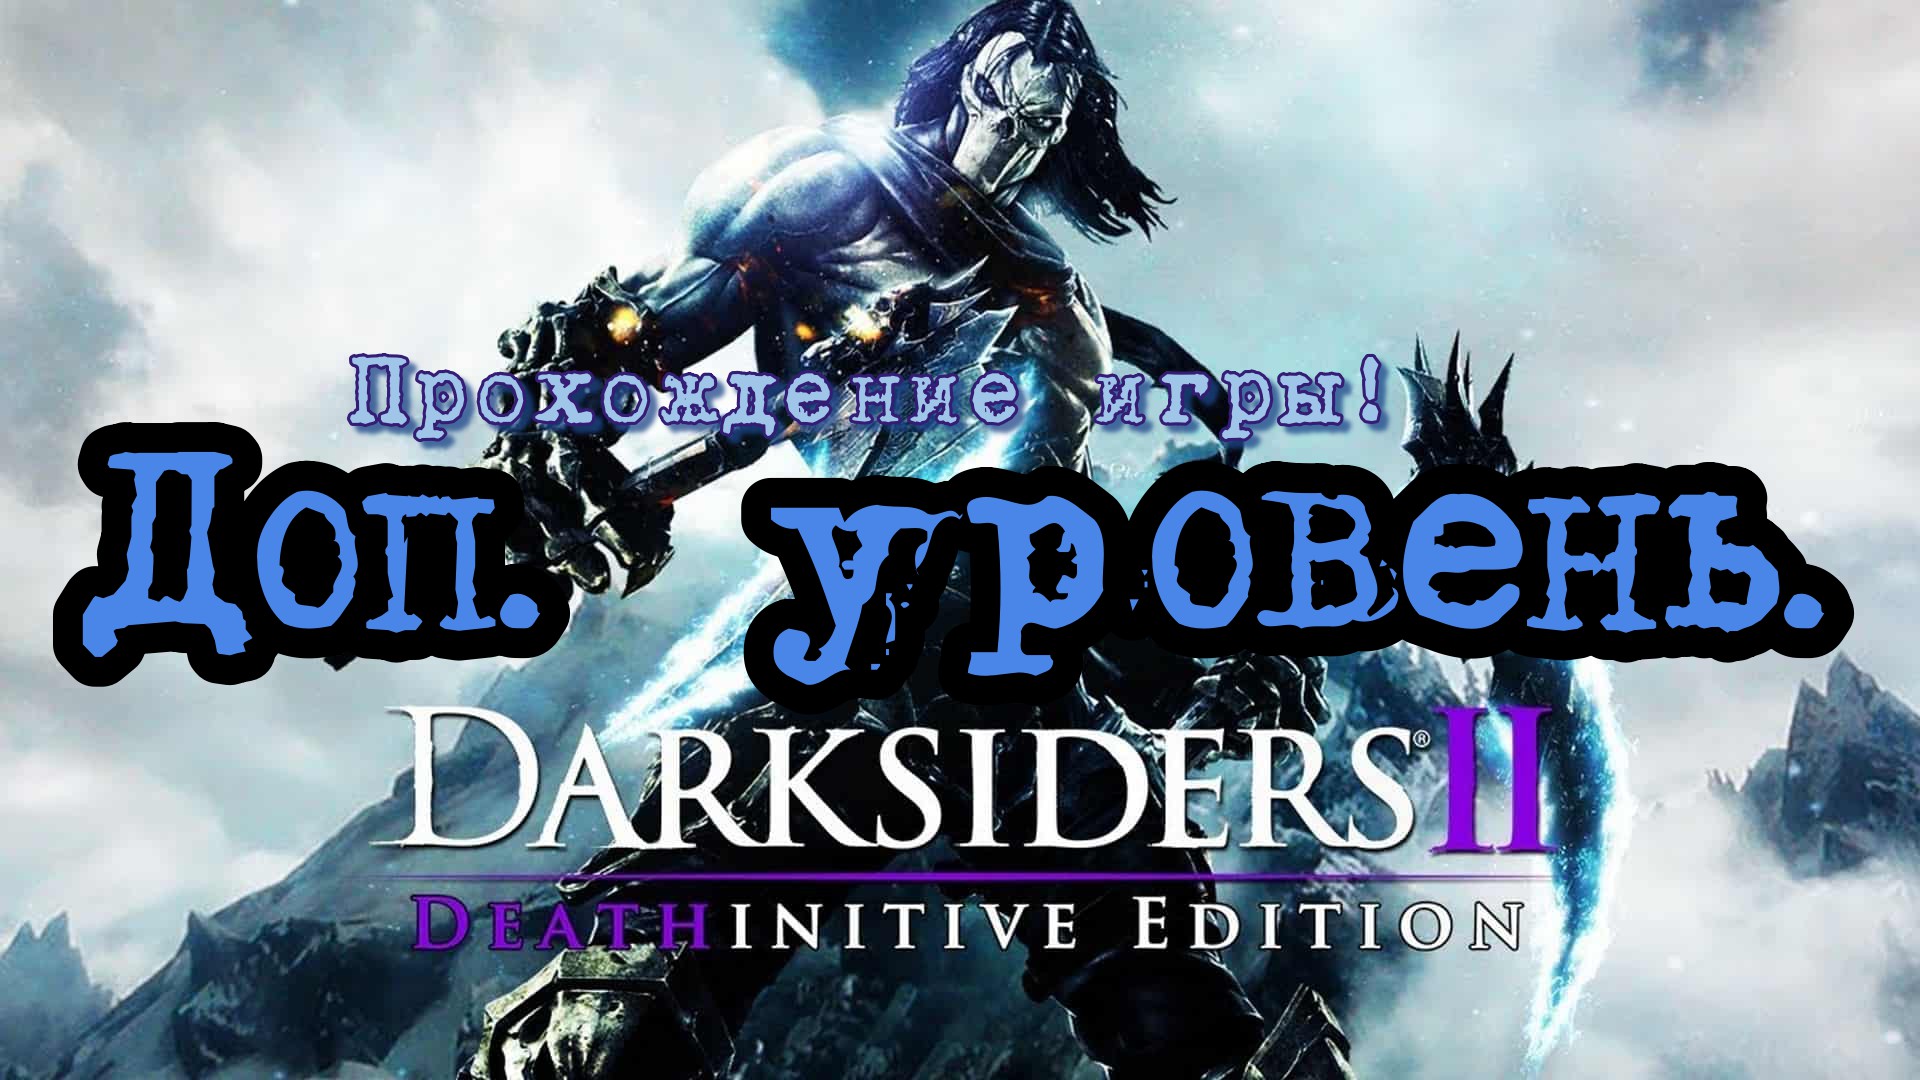 Прохождение игры - Darksiders 2 # 2. (Кузница в бездне) PC - HD - Full 1080p.